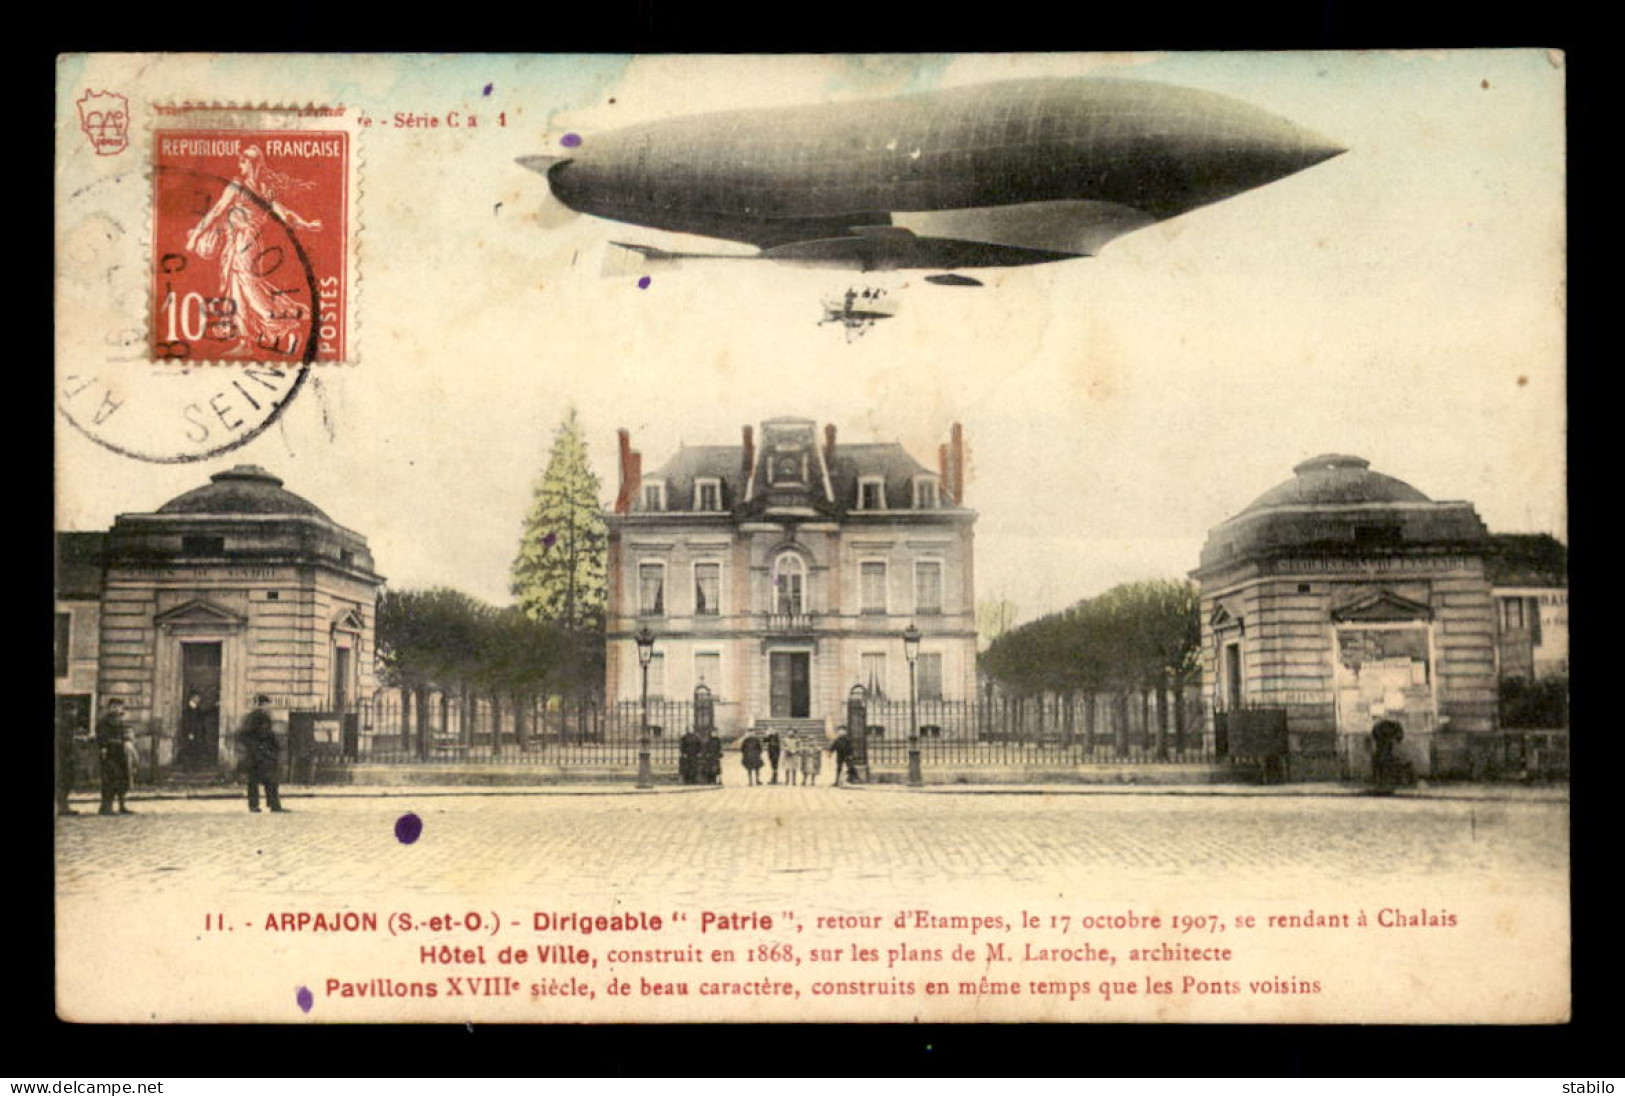 91 - ARPAJON - LE DIRIGEABLE PATRIE - RETOUR D'ETAMPES LE 17 OCTOBRE 1907 - Arpajon